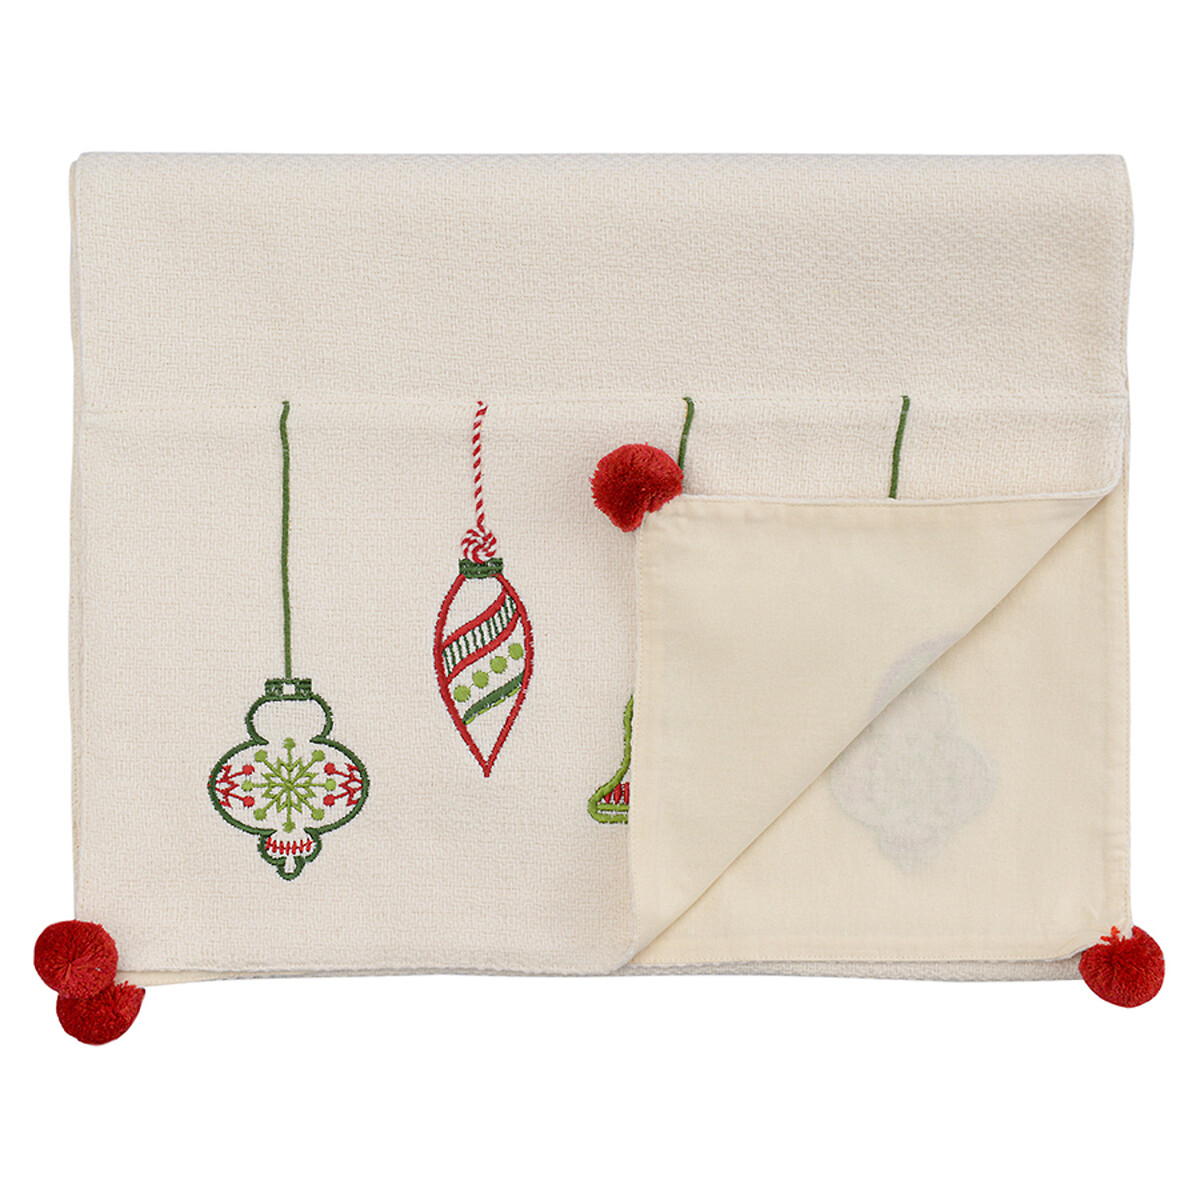 Дорожка с вышивкой Christmas decorations из коллекции New Year Essential 45х150 см  единый размер белый LaRedoute